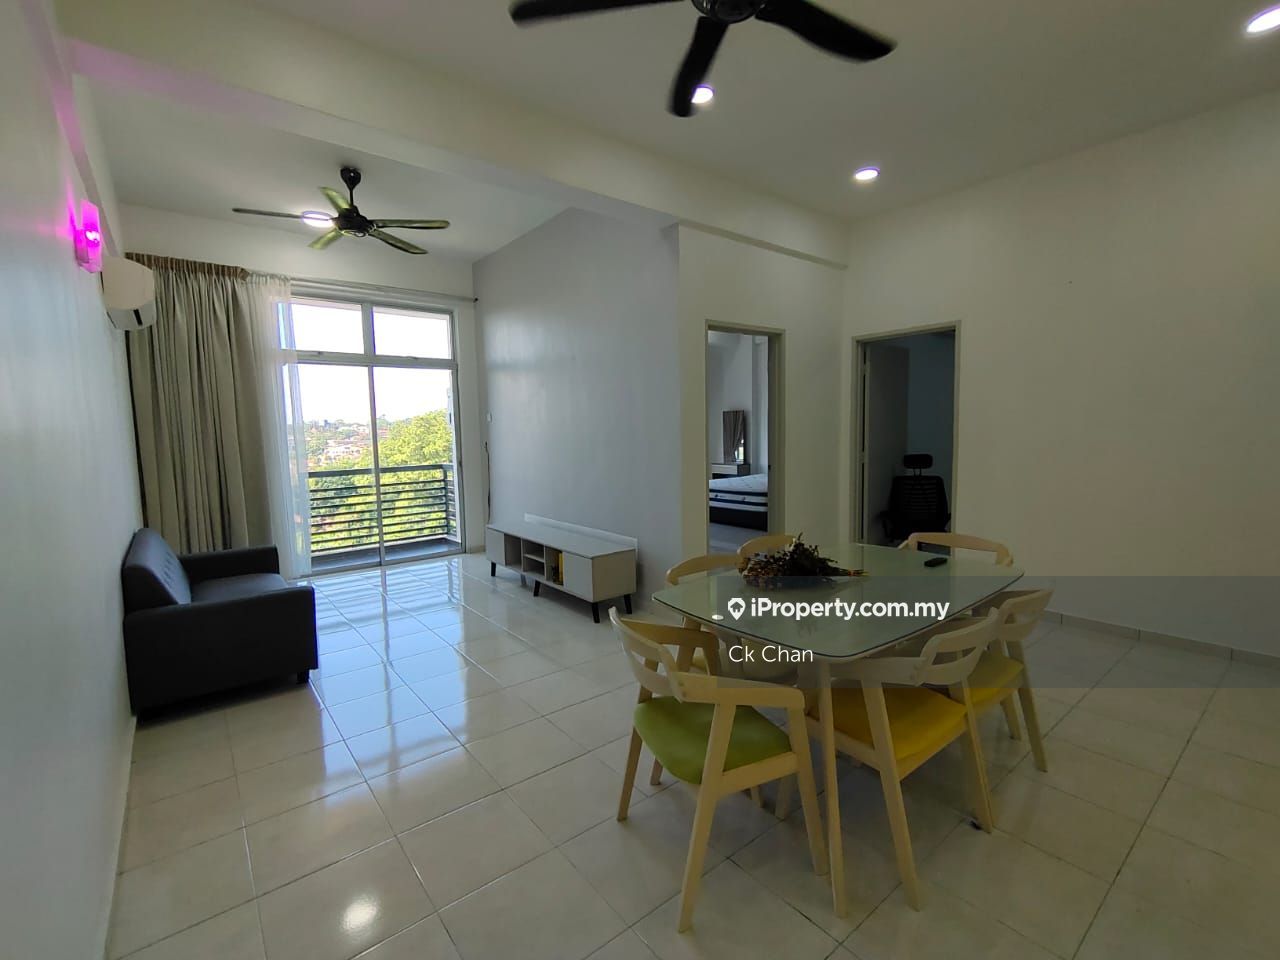 Rumah Pangsa Bukit Baru Jaya Corner lot Flat 4+1 bedrooms for rent in ...